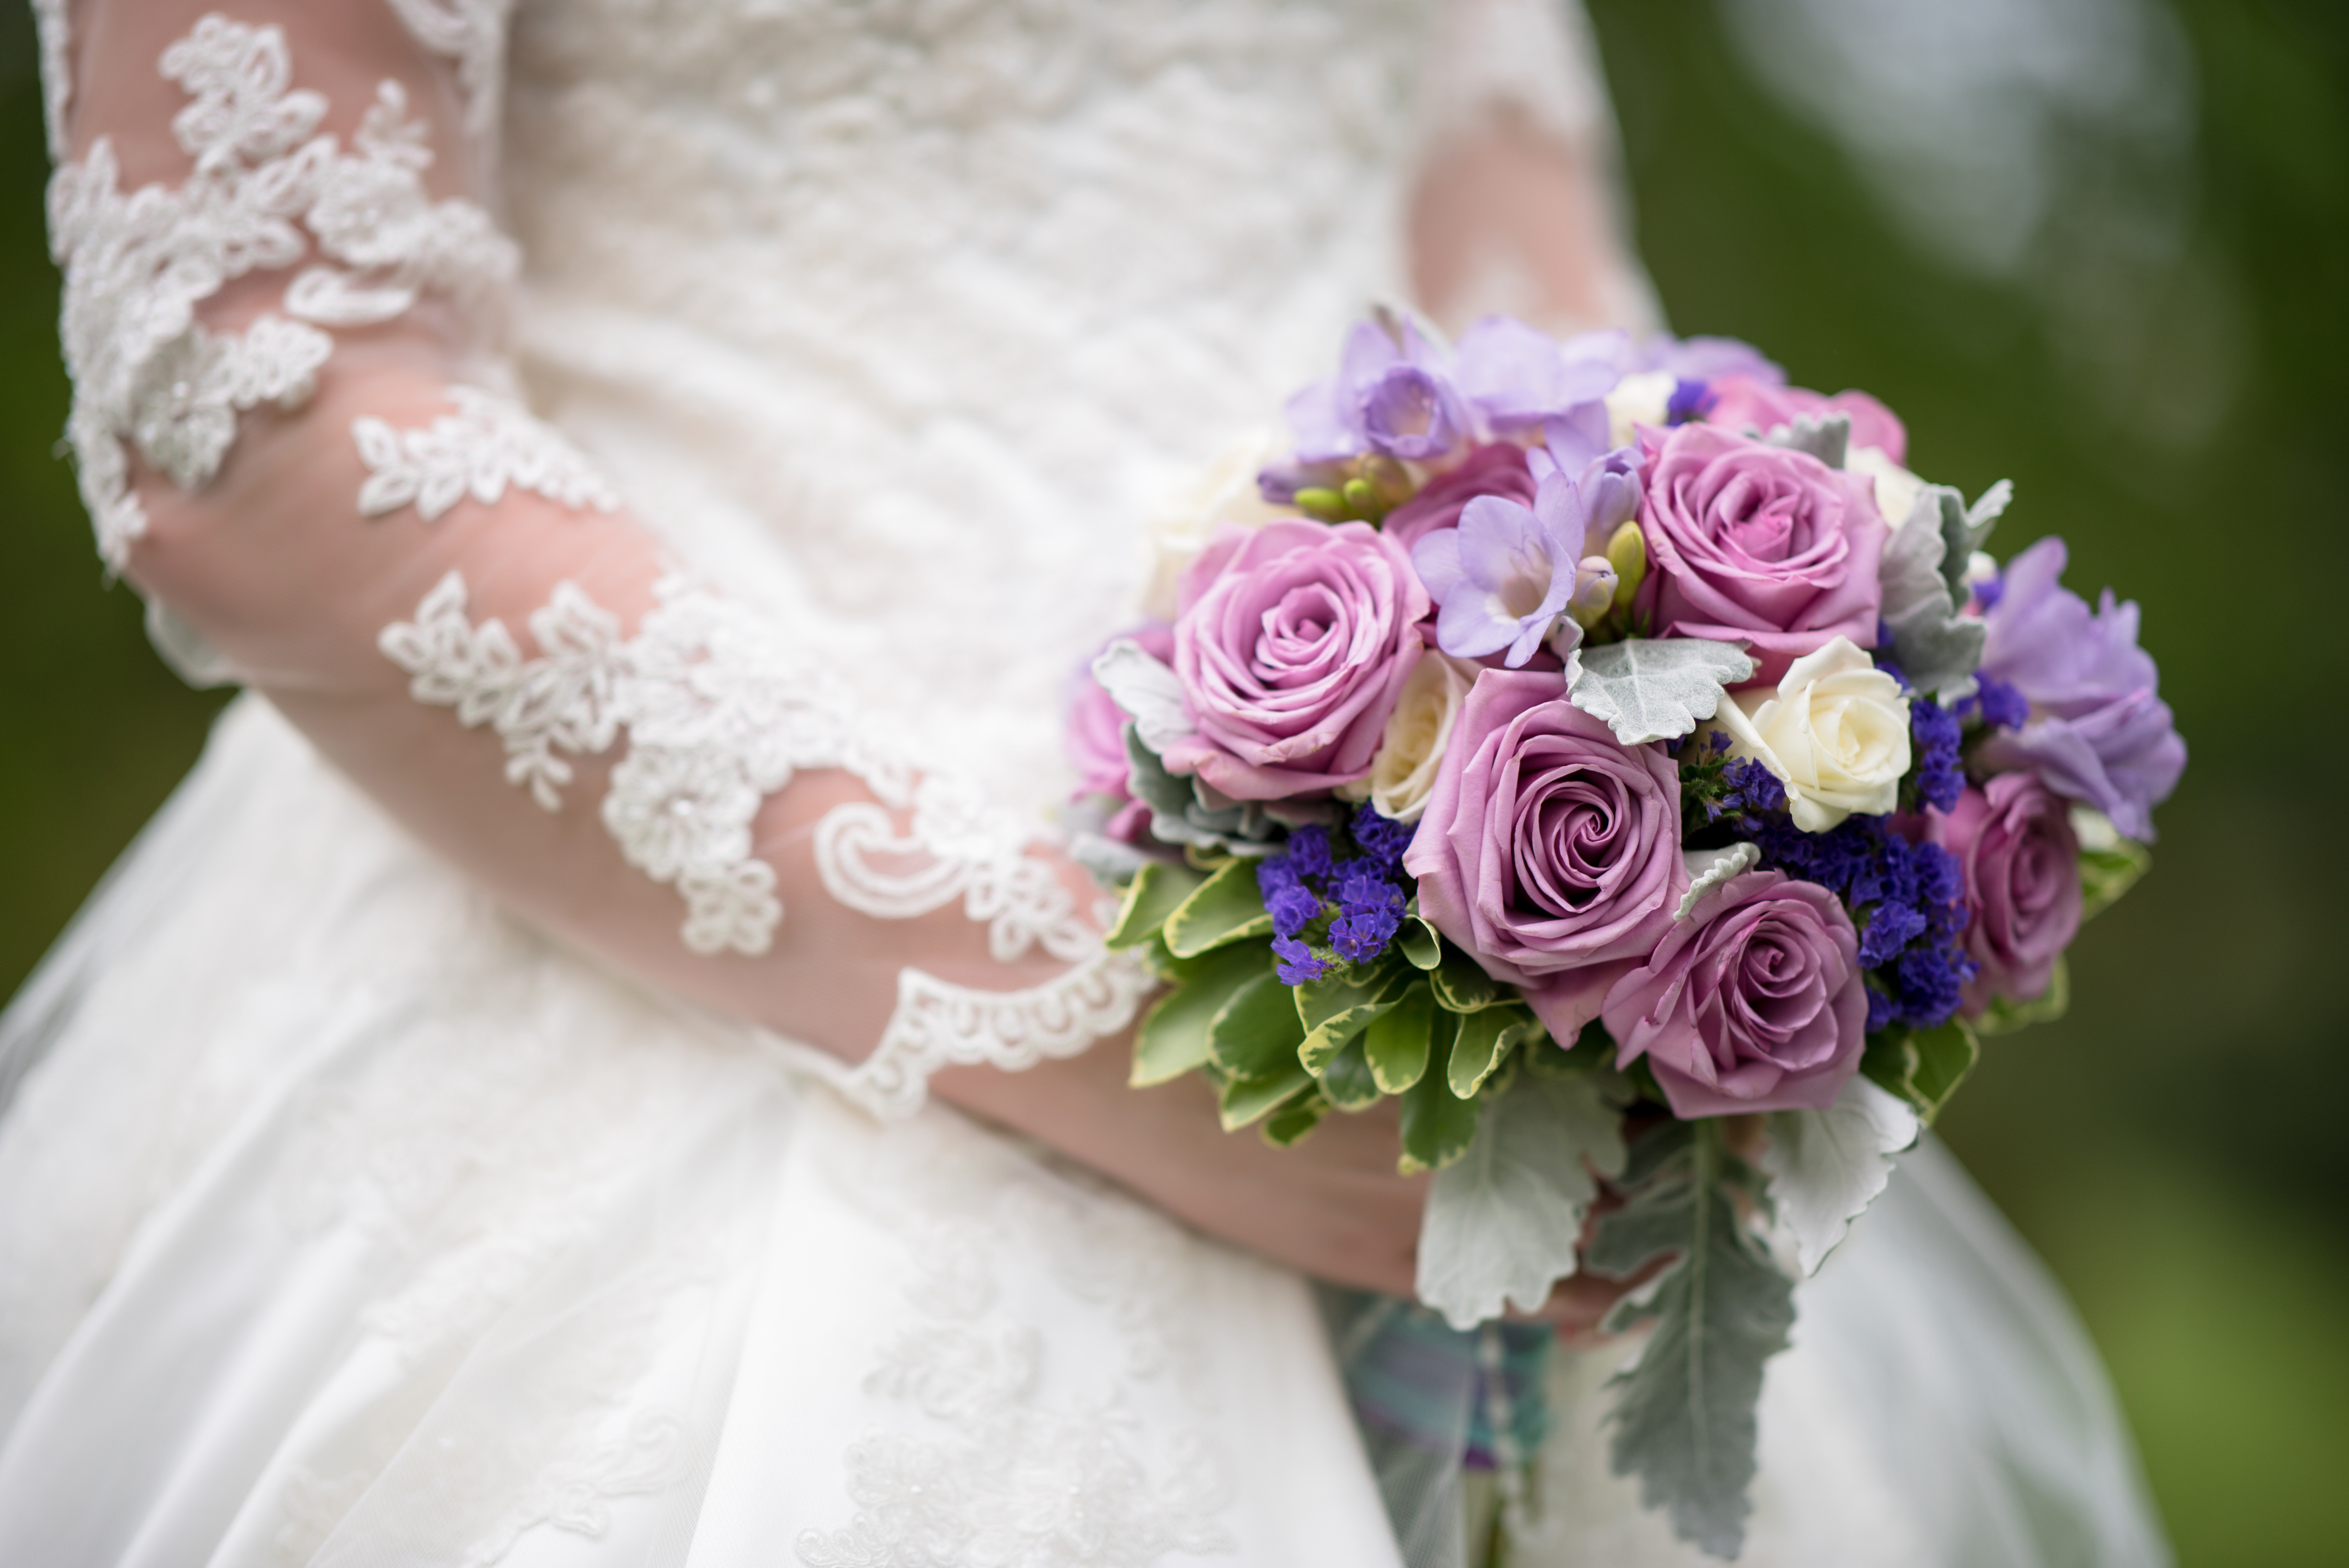 Addobbi floreali Bologna: i fiori in chiesa per il matrimonio